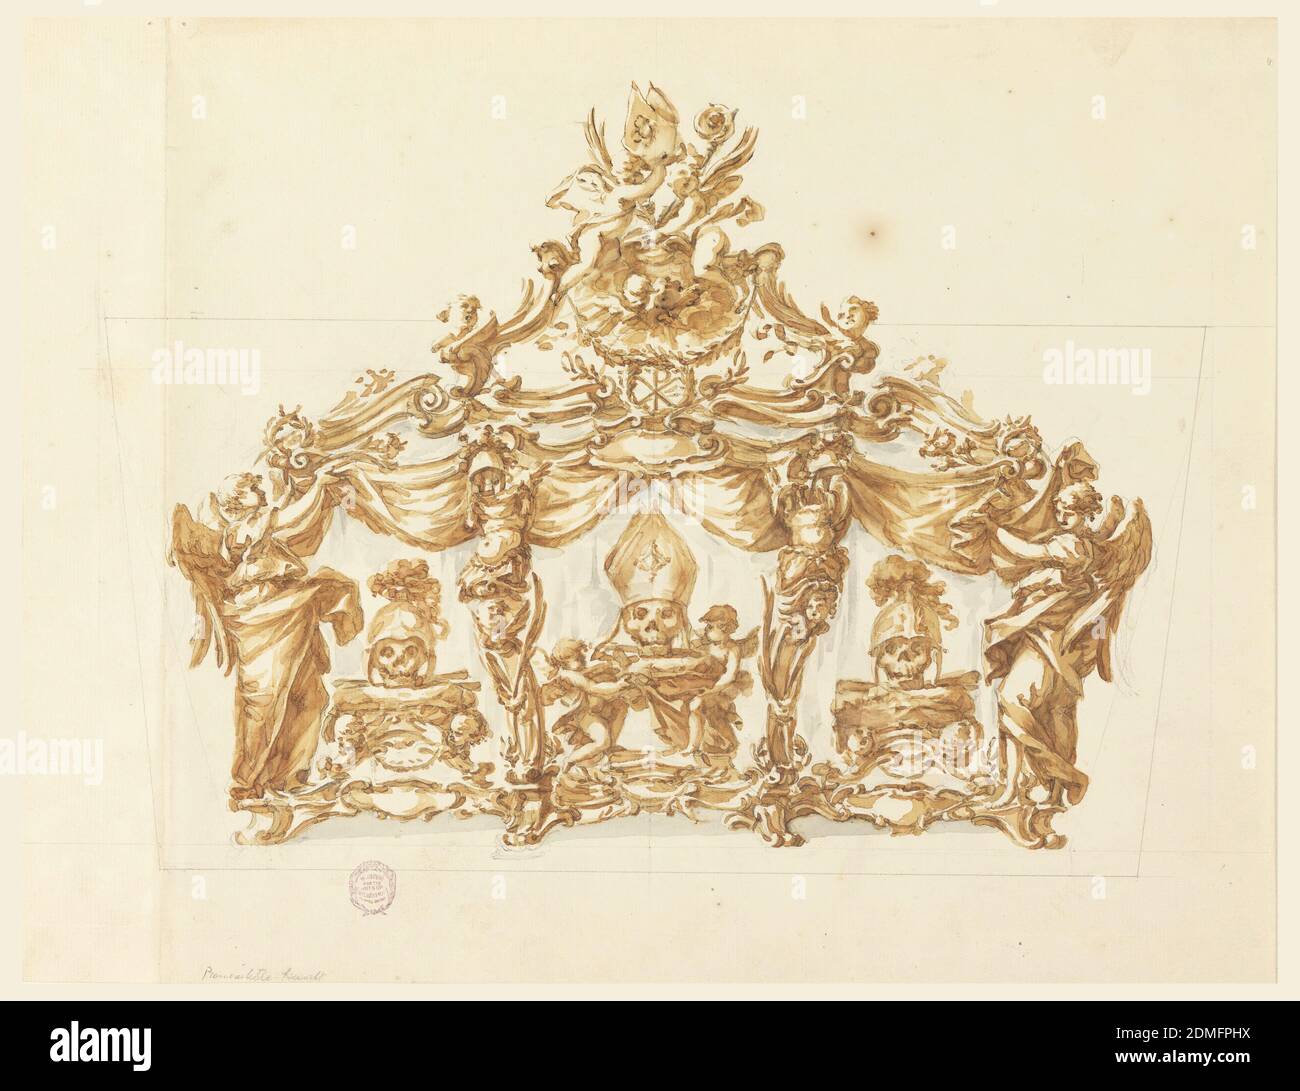 A Reliquary for Three Skulls, Carlo Marchionni, Italian, 1702–1786, Black Crayon, Brush, Sepia und graue Wasserfarbe., das Bild ist in einem horizontalen Rechteck. Es wird ein Kasten mit einem Giebel gezeigt, dessen allgemeine Form die eines Dreiecks ist. Die Front besteht aus einer Basis und zwei Engeln an den Ecken und zwei gaines von leeren Rüstungen im Inneren. In der Mitte ist ein Schädel mit einer Mitra auf einer Basis, die von zwei kleinen Engeln getragen wird, daneben stehen zwei Schädel mit Helmen, die zusammen mit Knochen auf Basen stehen. Die großen Engel an den Ecken heben einen Vorhang. Auf dem Giebel befinden sich zwei Engel mit Mitra und Handfläche Stockfoto